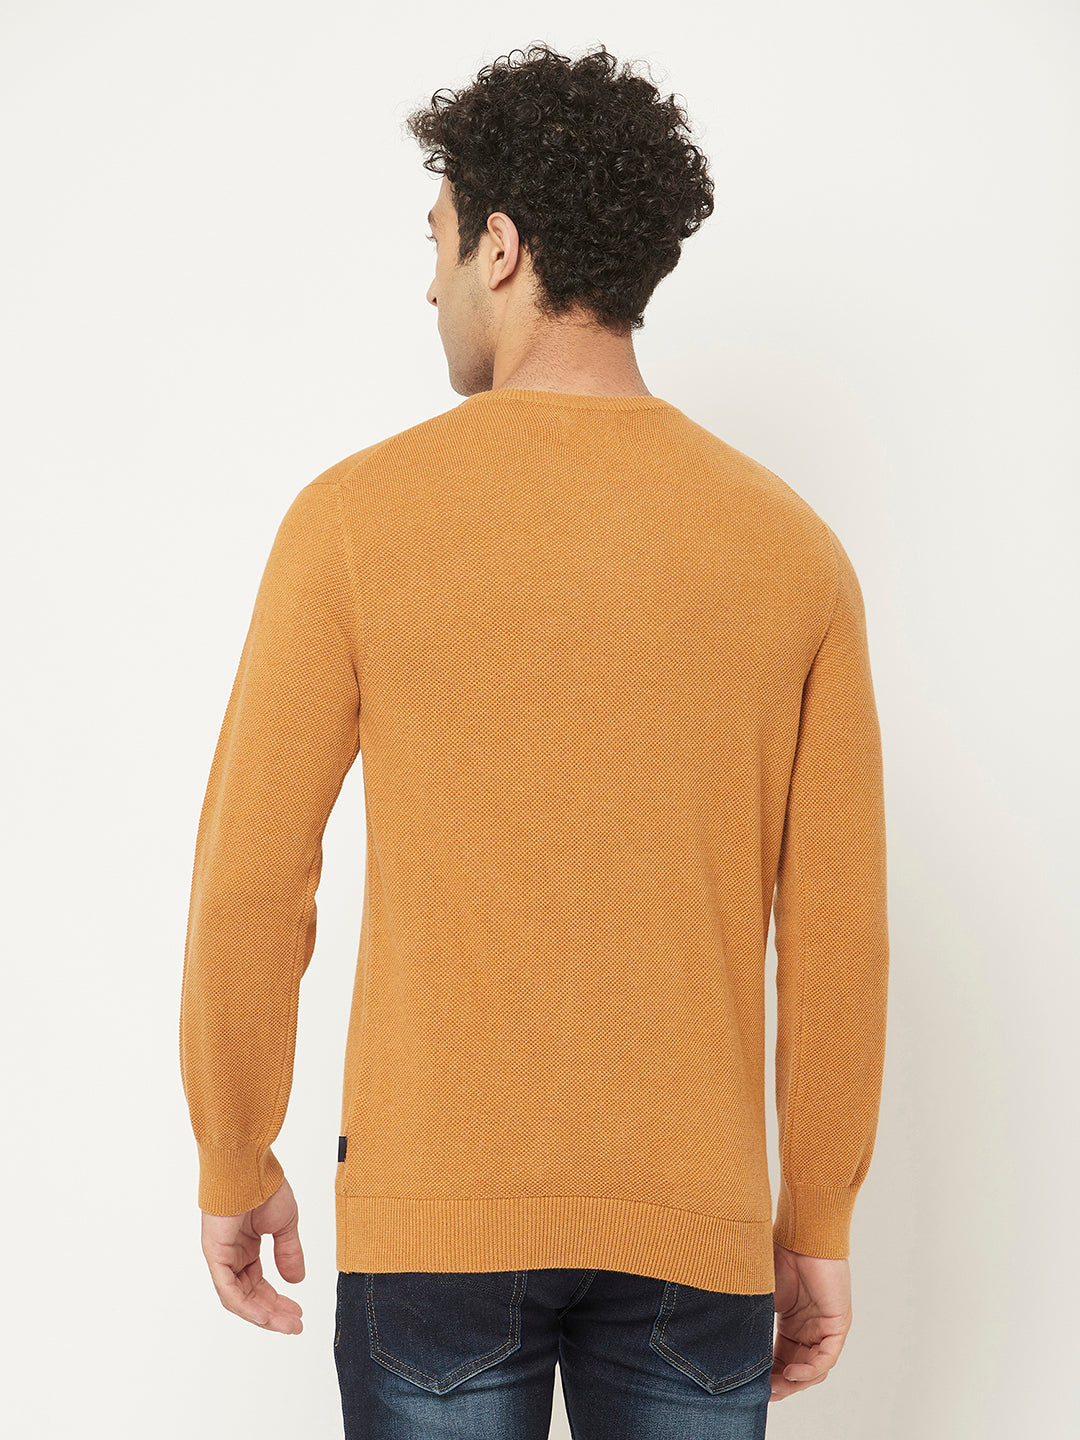 Orange – in Pure Cotton Sweater Crimsoune Club